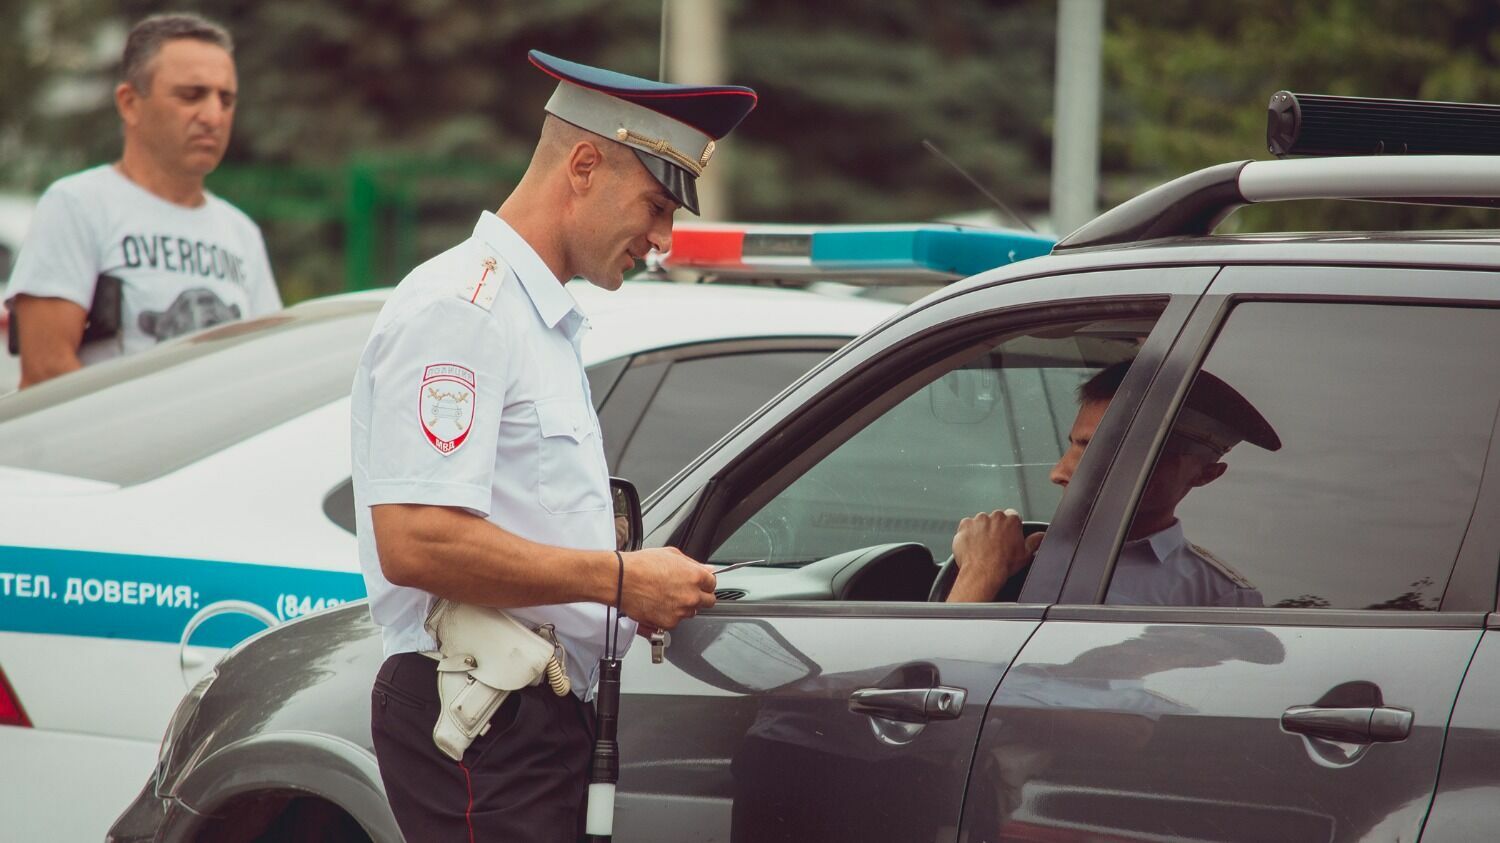 У ГИБДД будет доступ к диагнозам водителей, законопроект уже проходит согласование в Госдуме.